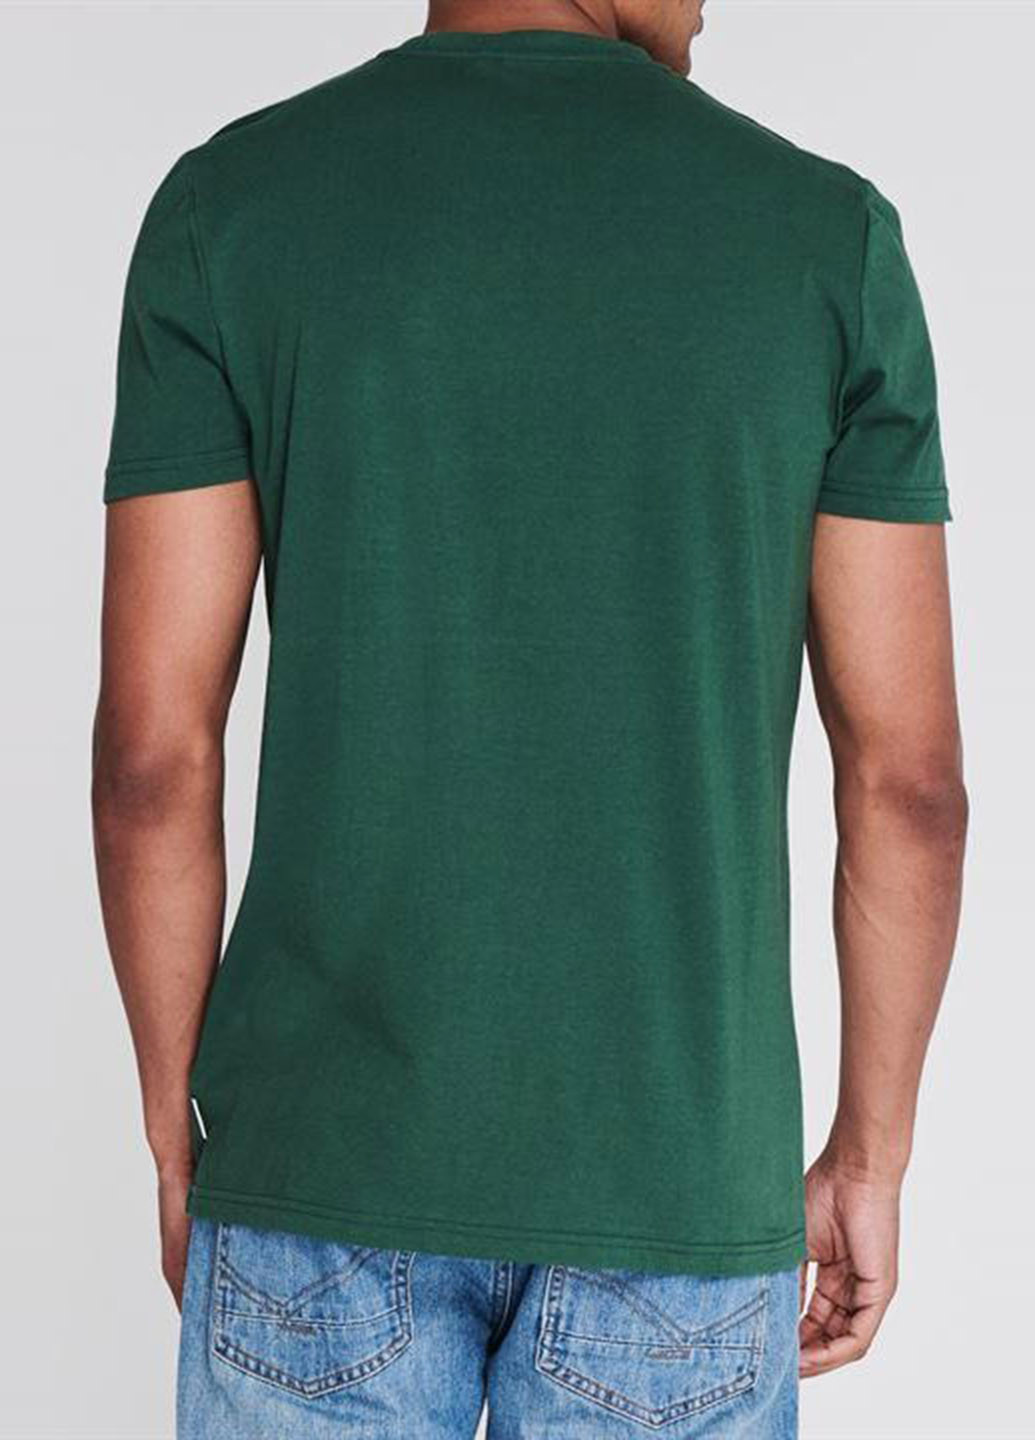 Темно-зелена футболка Lee Cooper